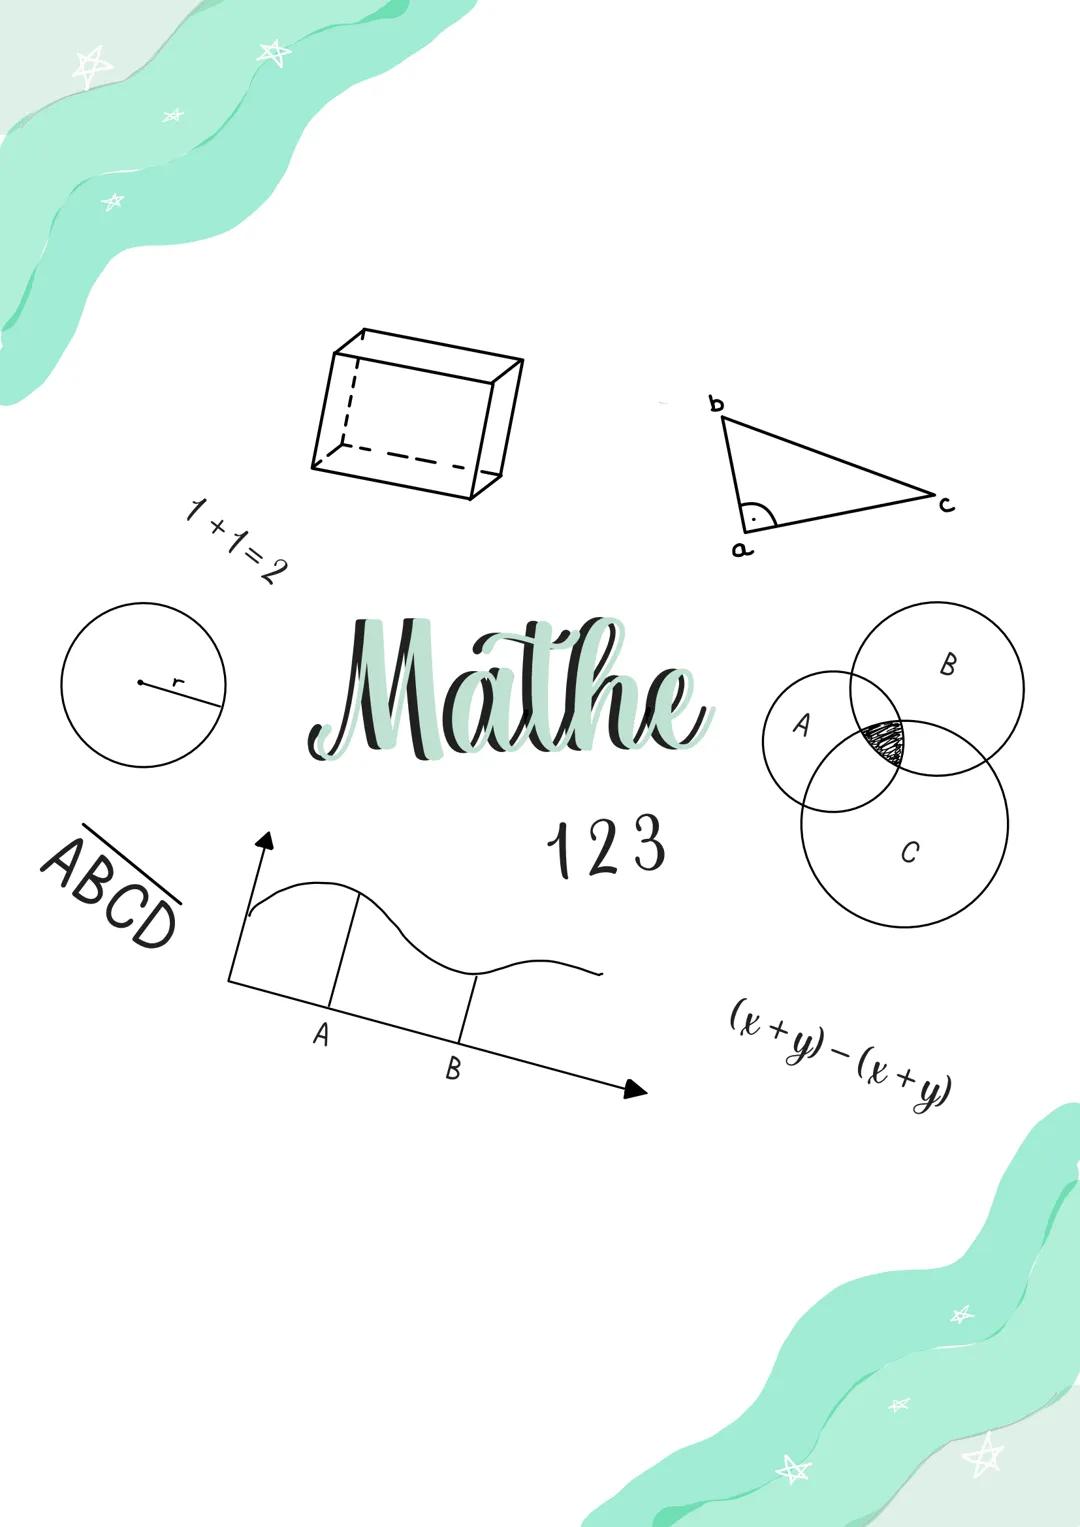 1+1=2
ABCD
Mathe
123
A
B
a
с
B
(x + y) = (x + y) 1+1=2
ABCD
Mathe
123
H
B
a
B
(x + y) - (x + y) 1+1=2
ABCD
Mathe
123
A
B
B
(x + y) - (x + y)